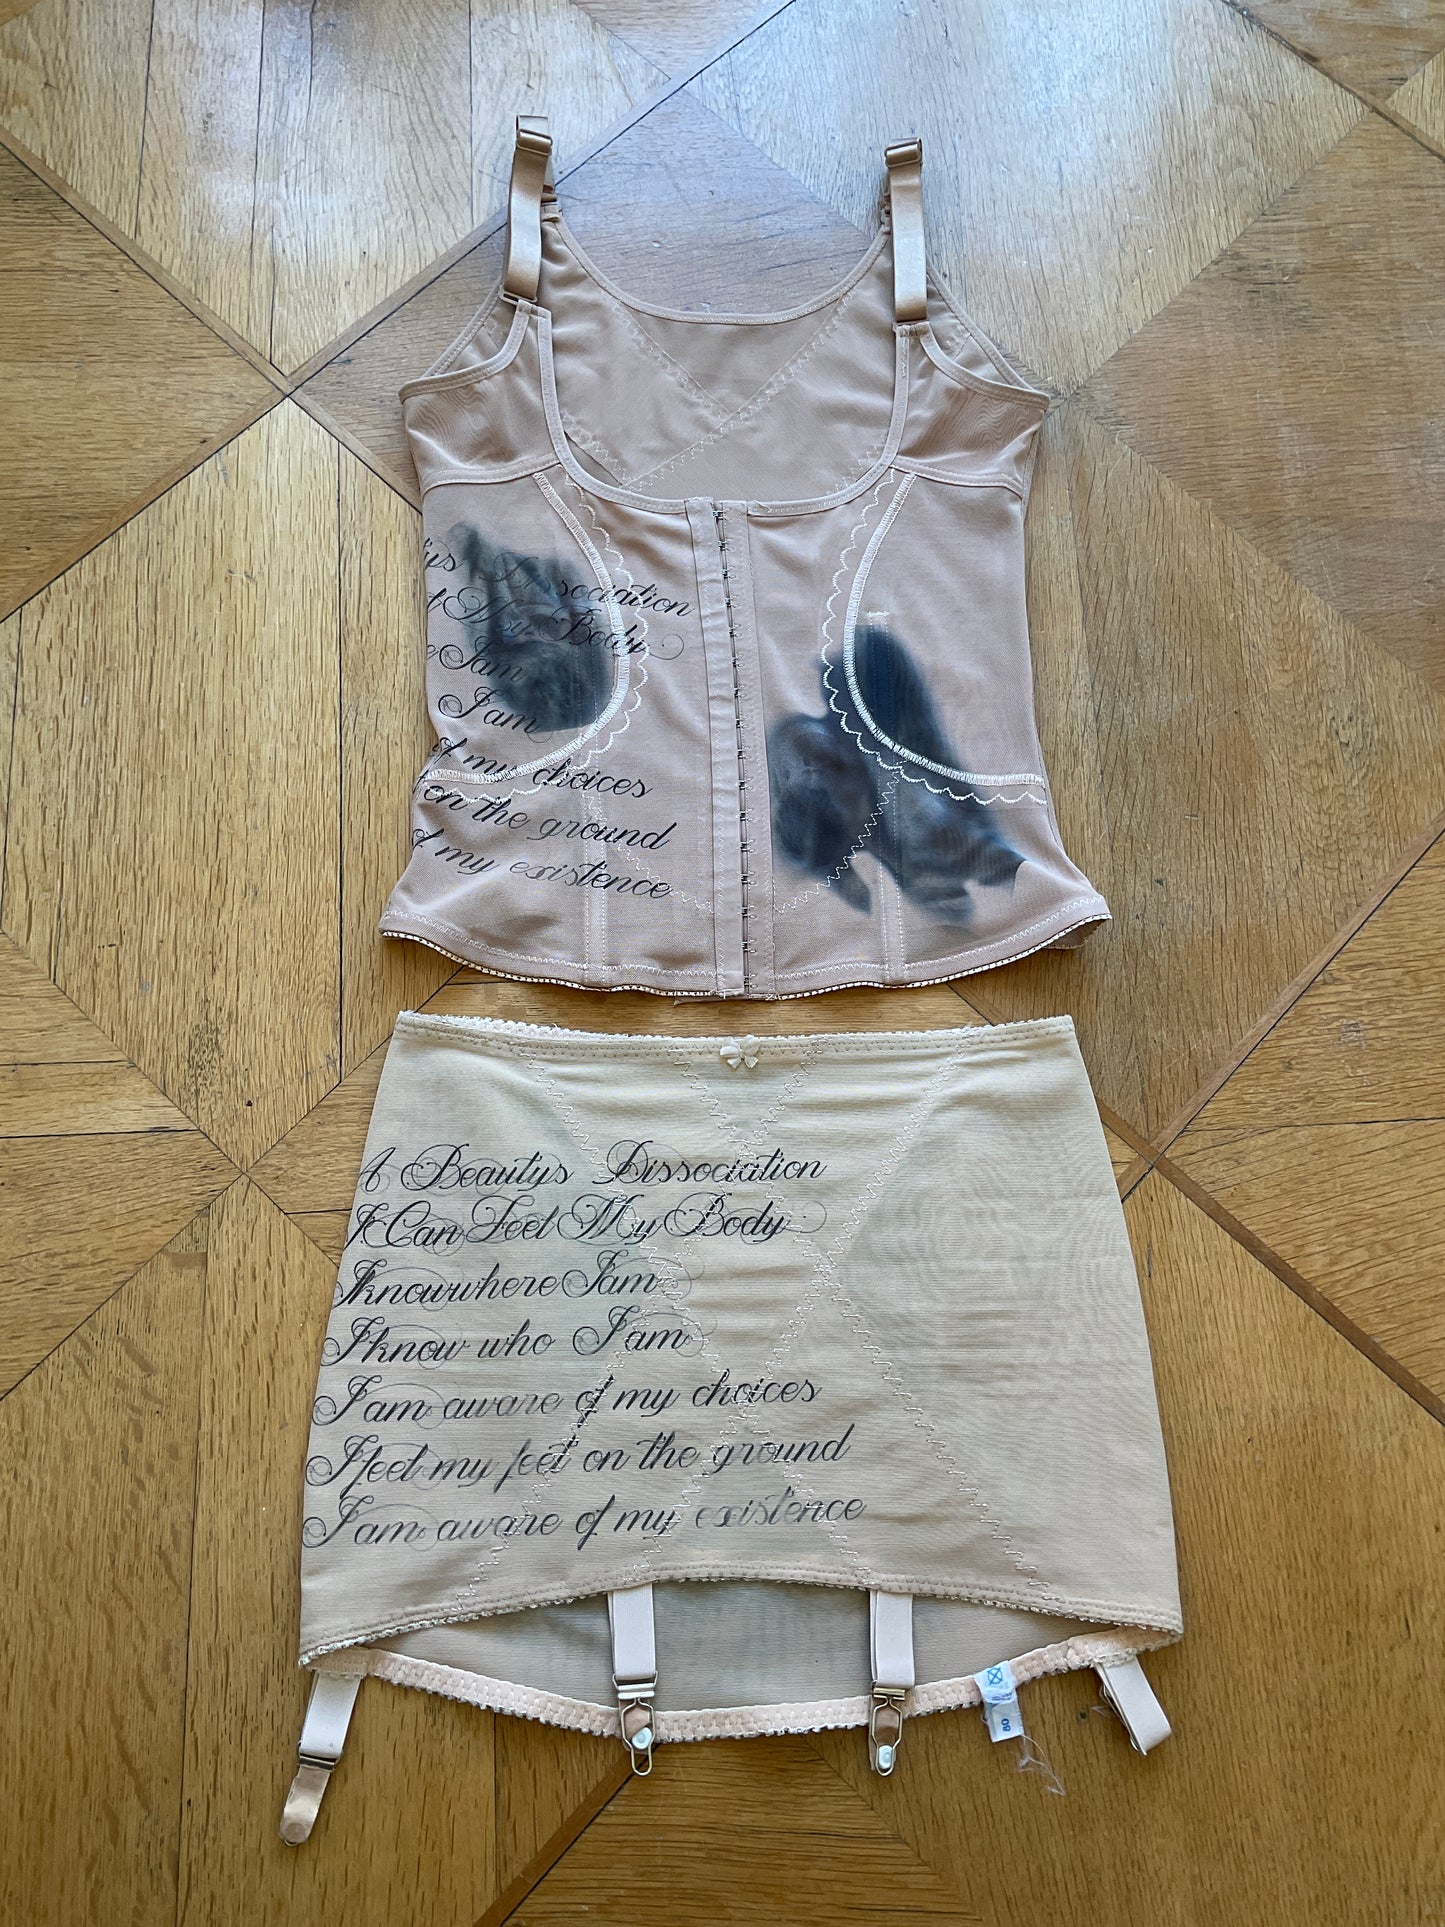 ex-myszka x annina - Printed corset top